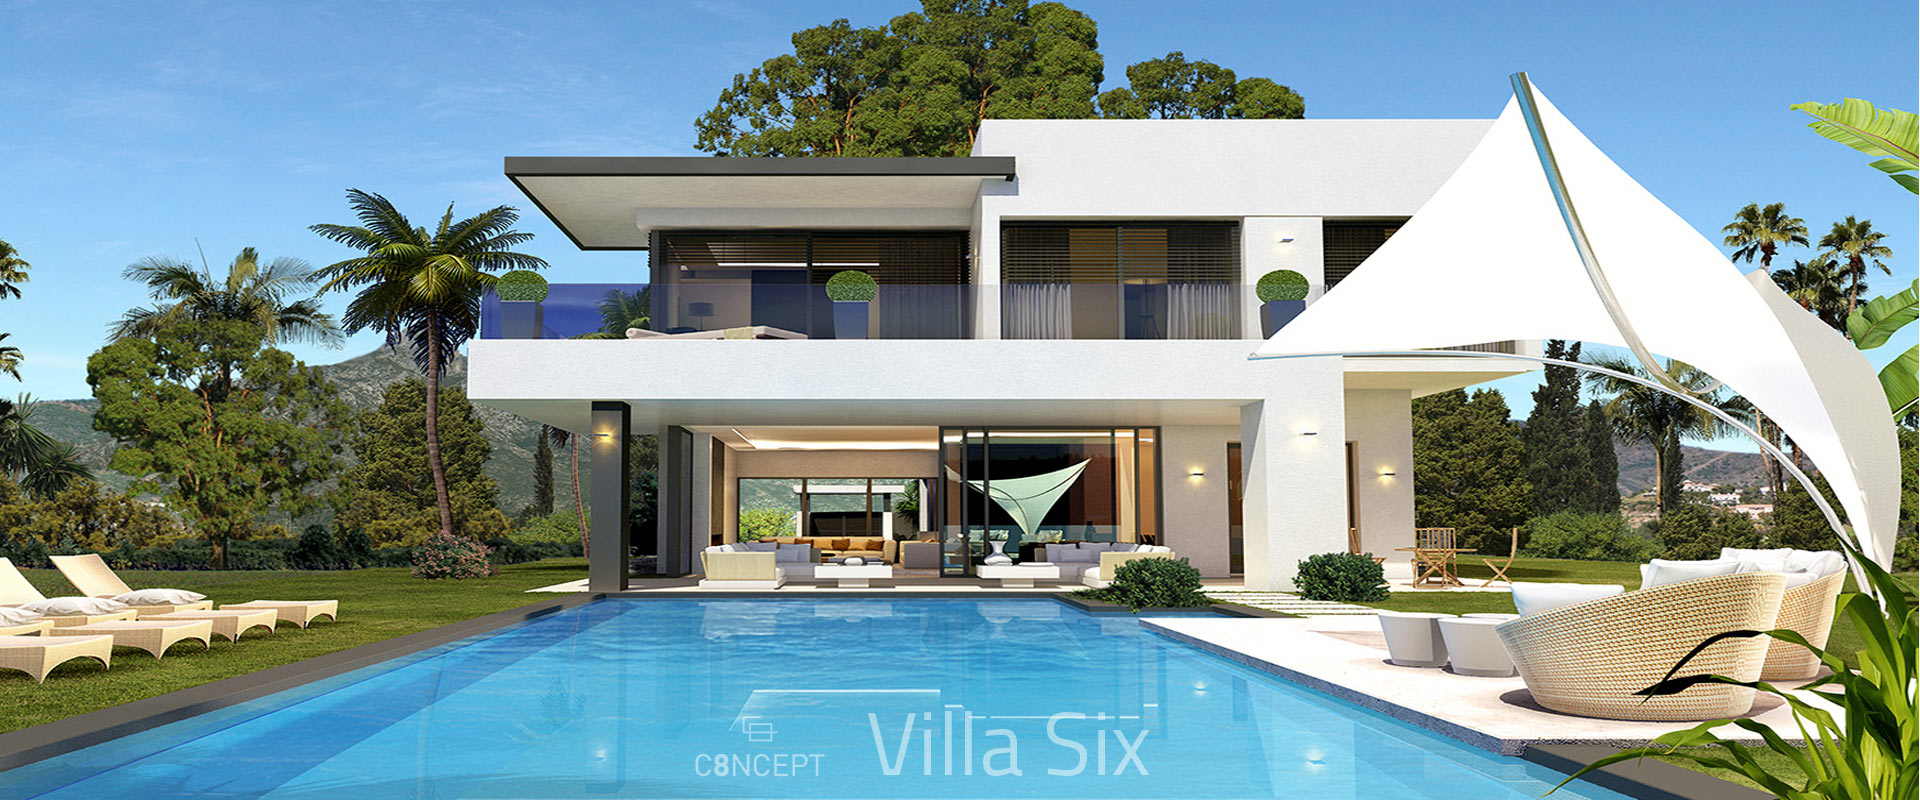 villa6-01.jpg (353 KB)